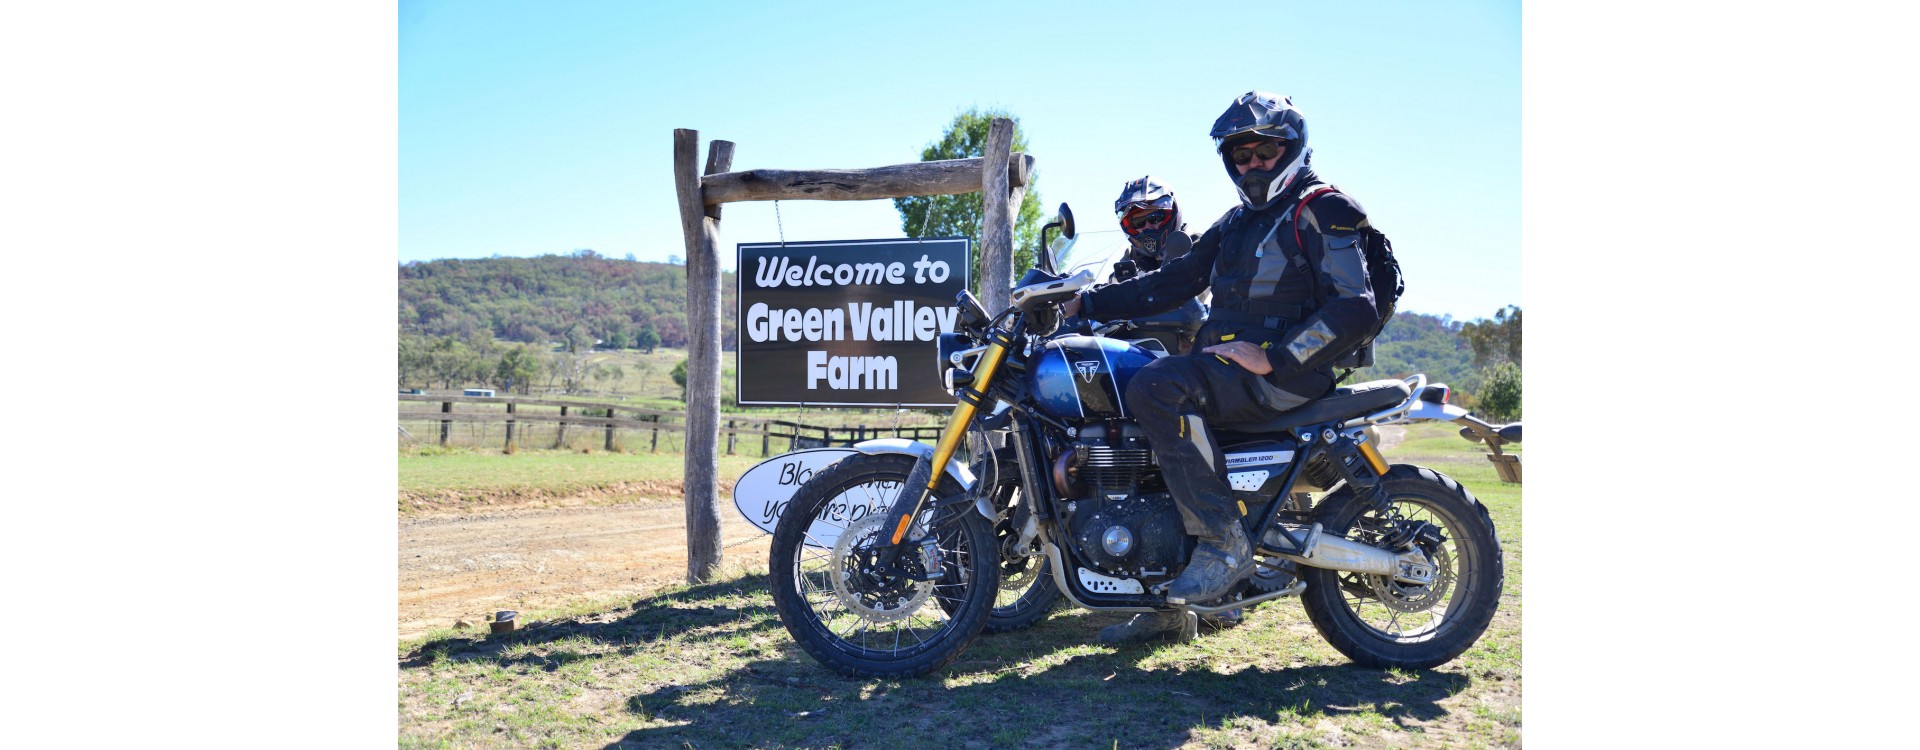 Motorrad Garage Team at Adventure Rider Magazine Congregation NSW